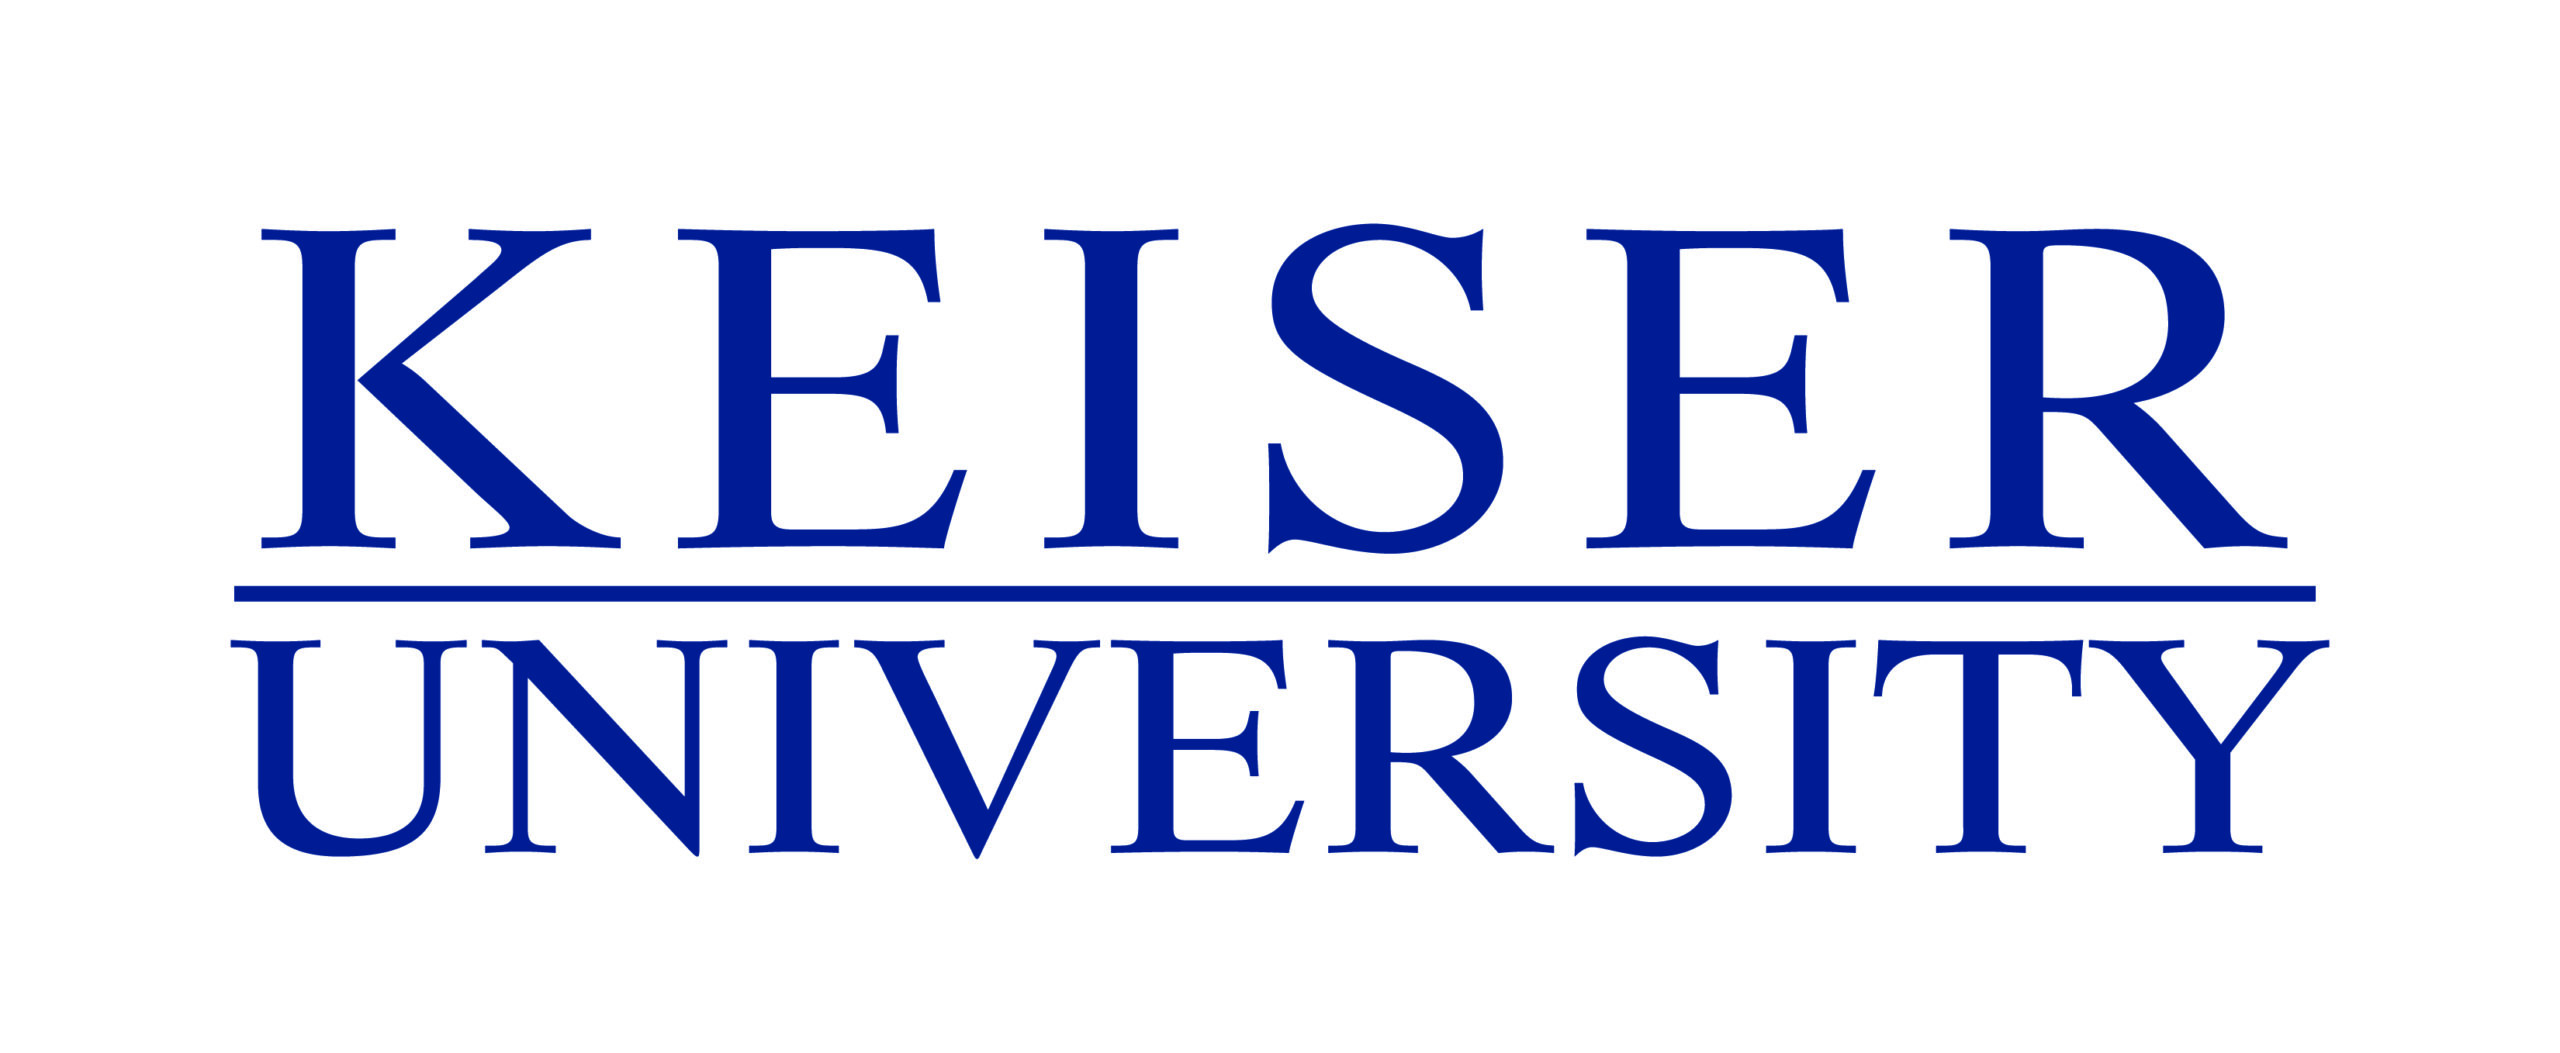 Kesier University Logo-01